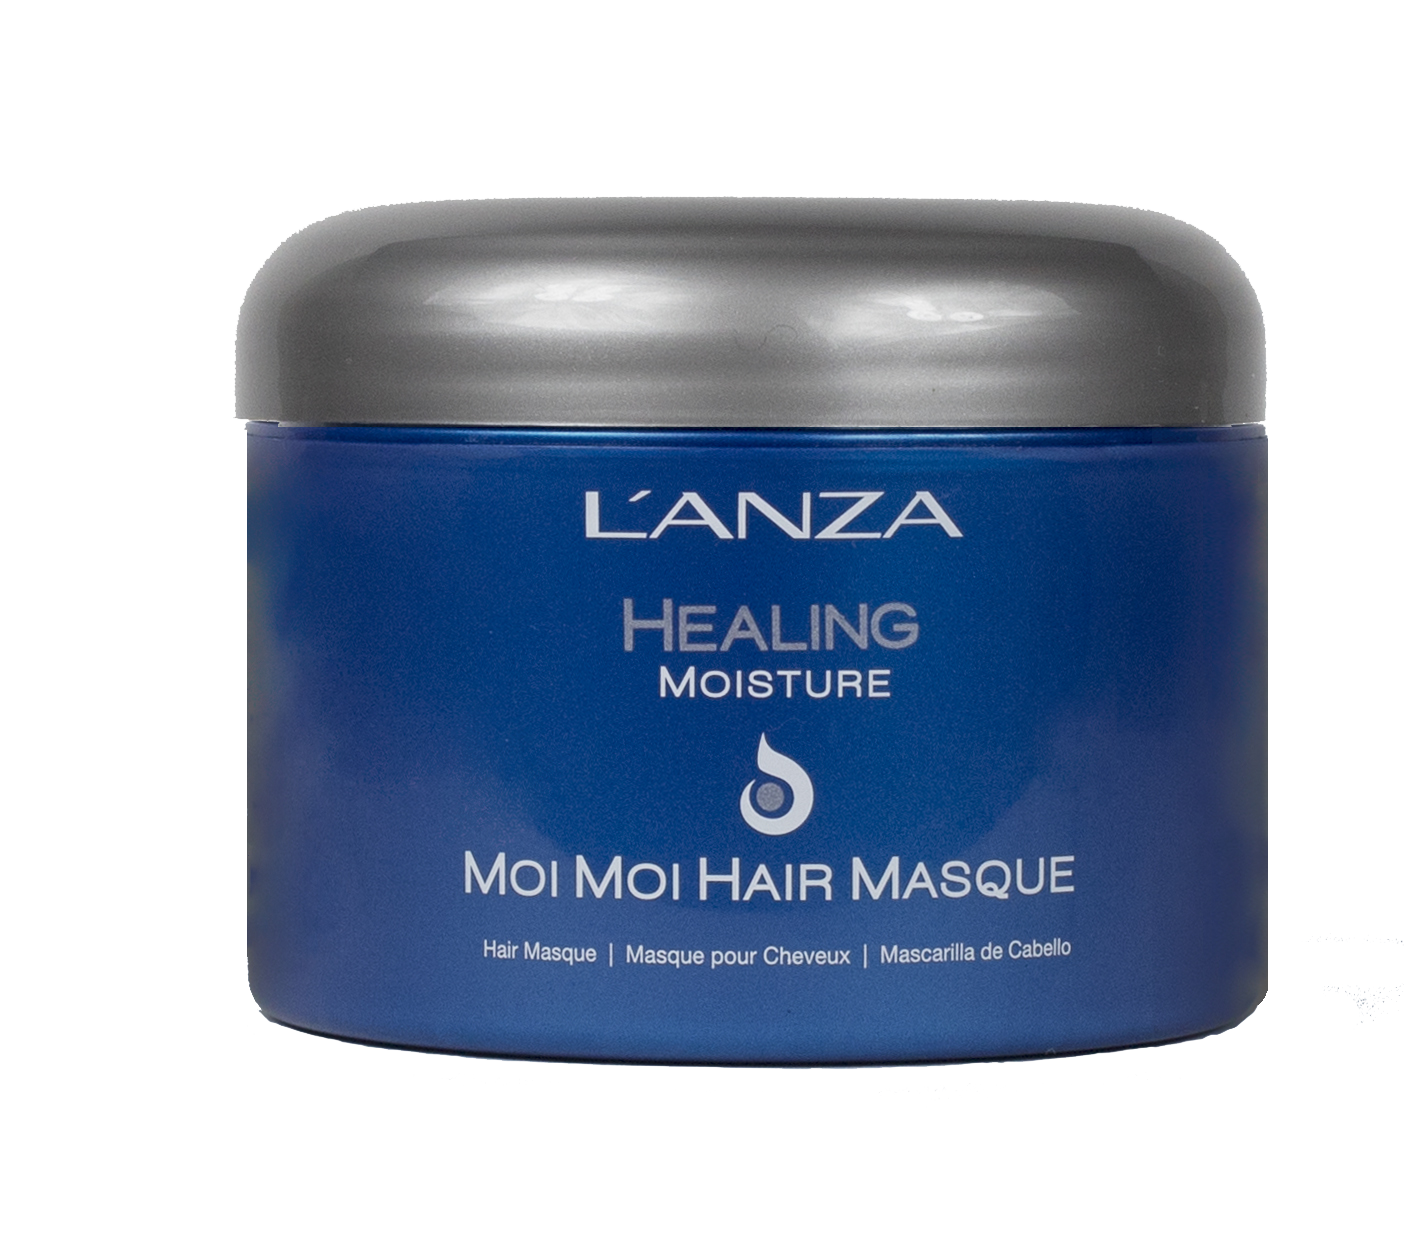 L’ANZA Healing Moisture Moi Moi Hair Masque